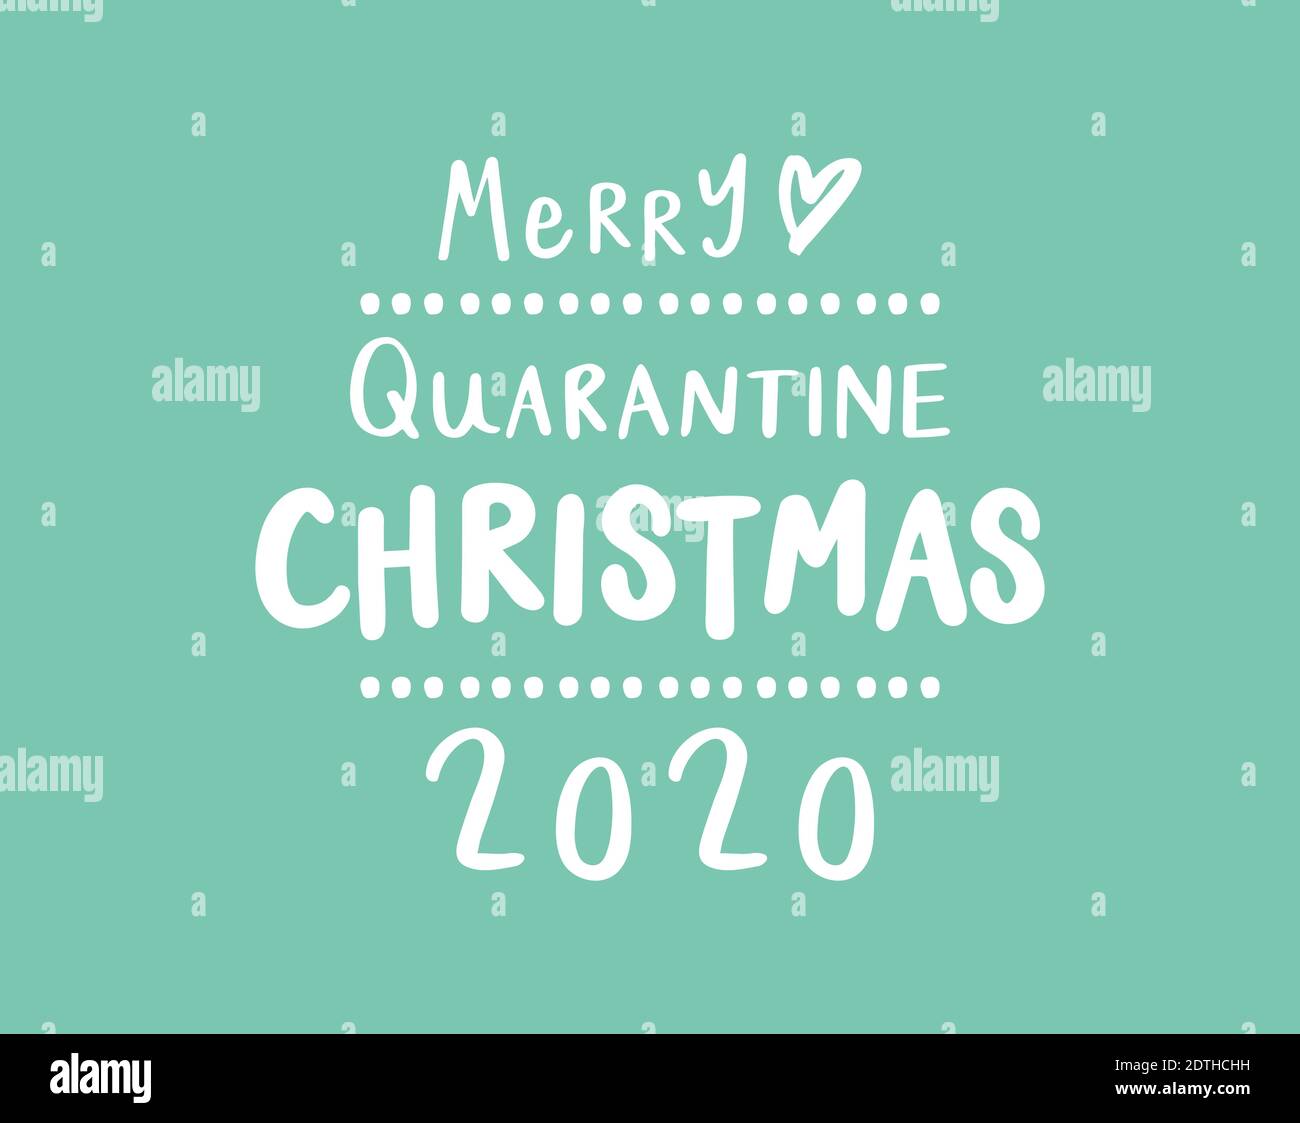 Frohe Quarantäne Weihnachten 2020 Text auf pastellgrünem Hintergrund Stock Vektor